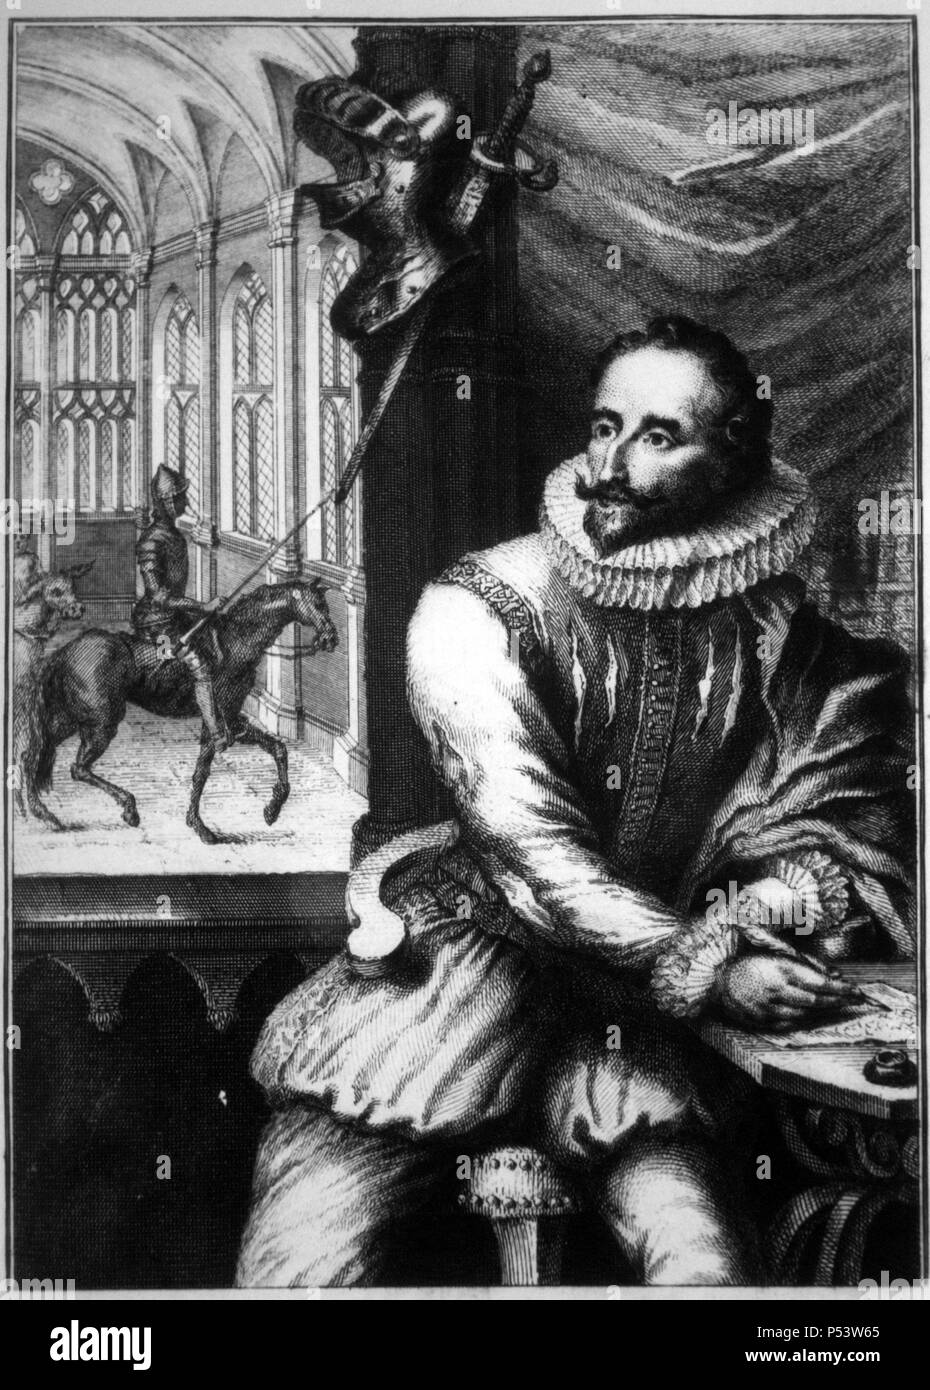 Miguel de Cervantes Saavedra (1547-1616), escritor y dramaturgo español. Dibujo atribuido a él mismo. Stock Photo